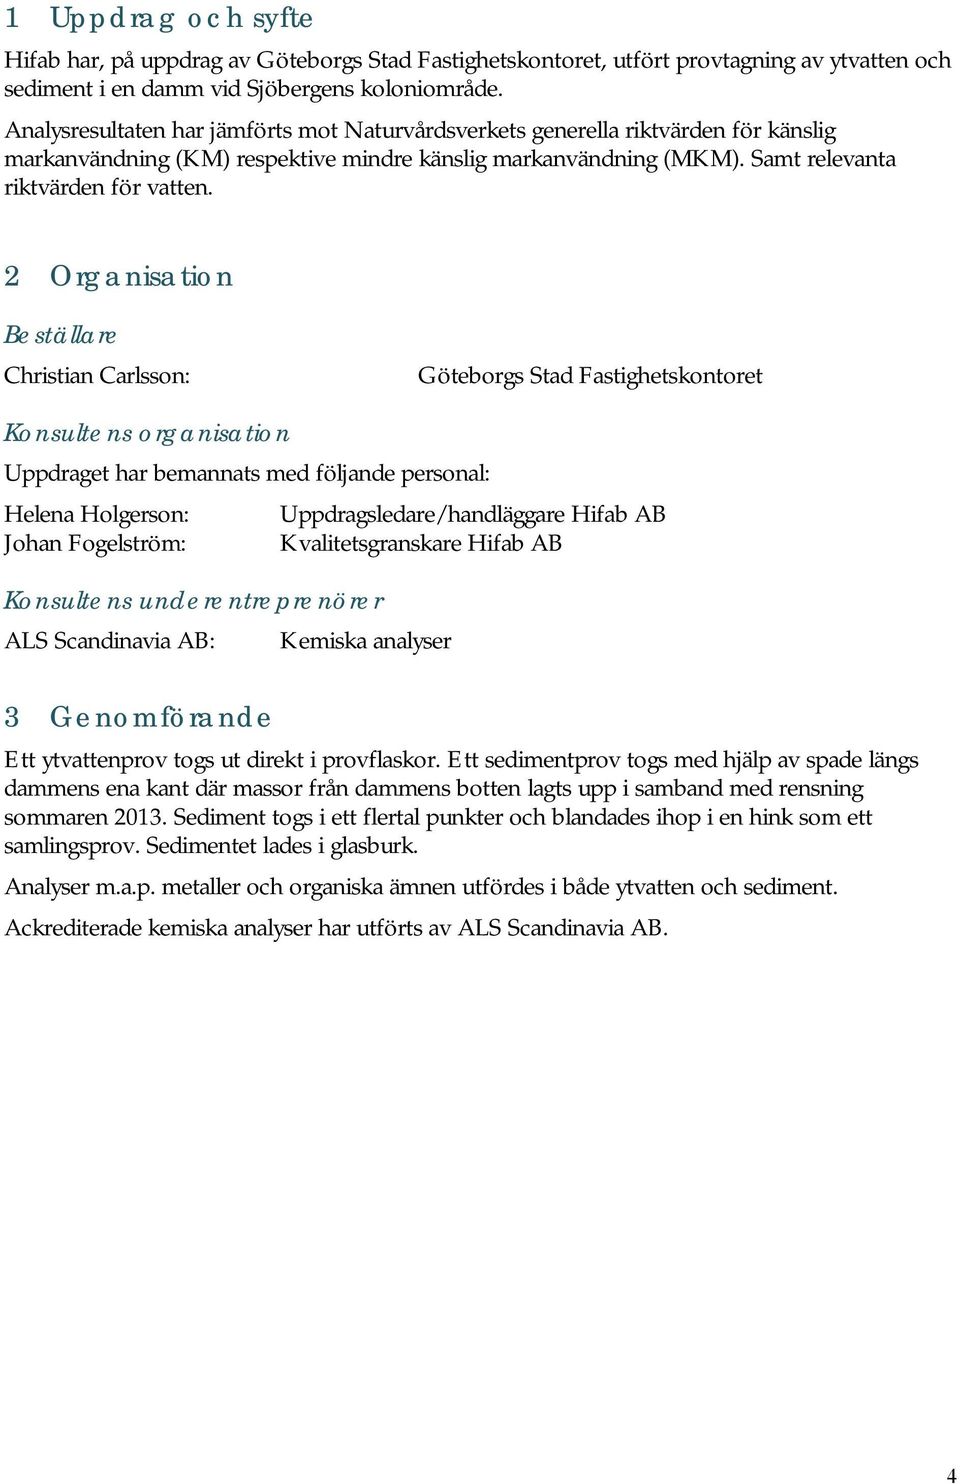 2 Organisation Beställare Christian Carlsson: Göteborgs Stad Fastighetskontoret Konsultens organisation Uppdraget har bemannats med följande personal: Helena Holgerson: Uppdragsledare/handläggare